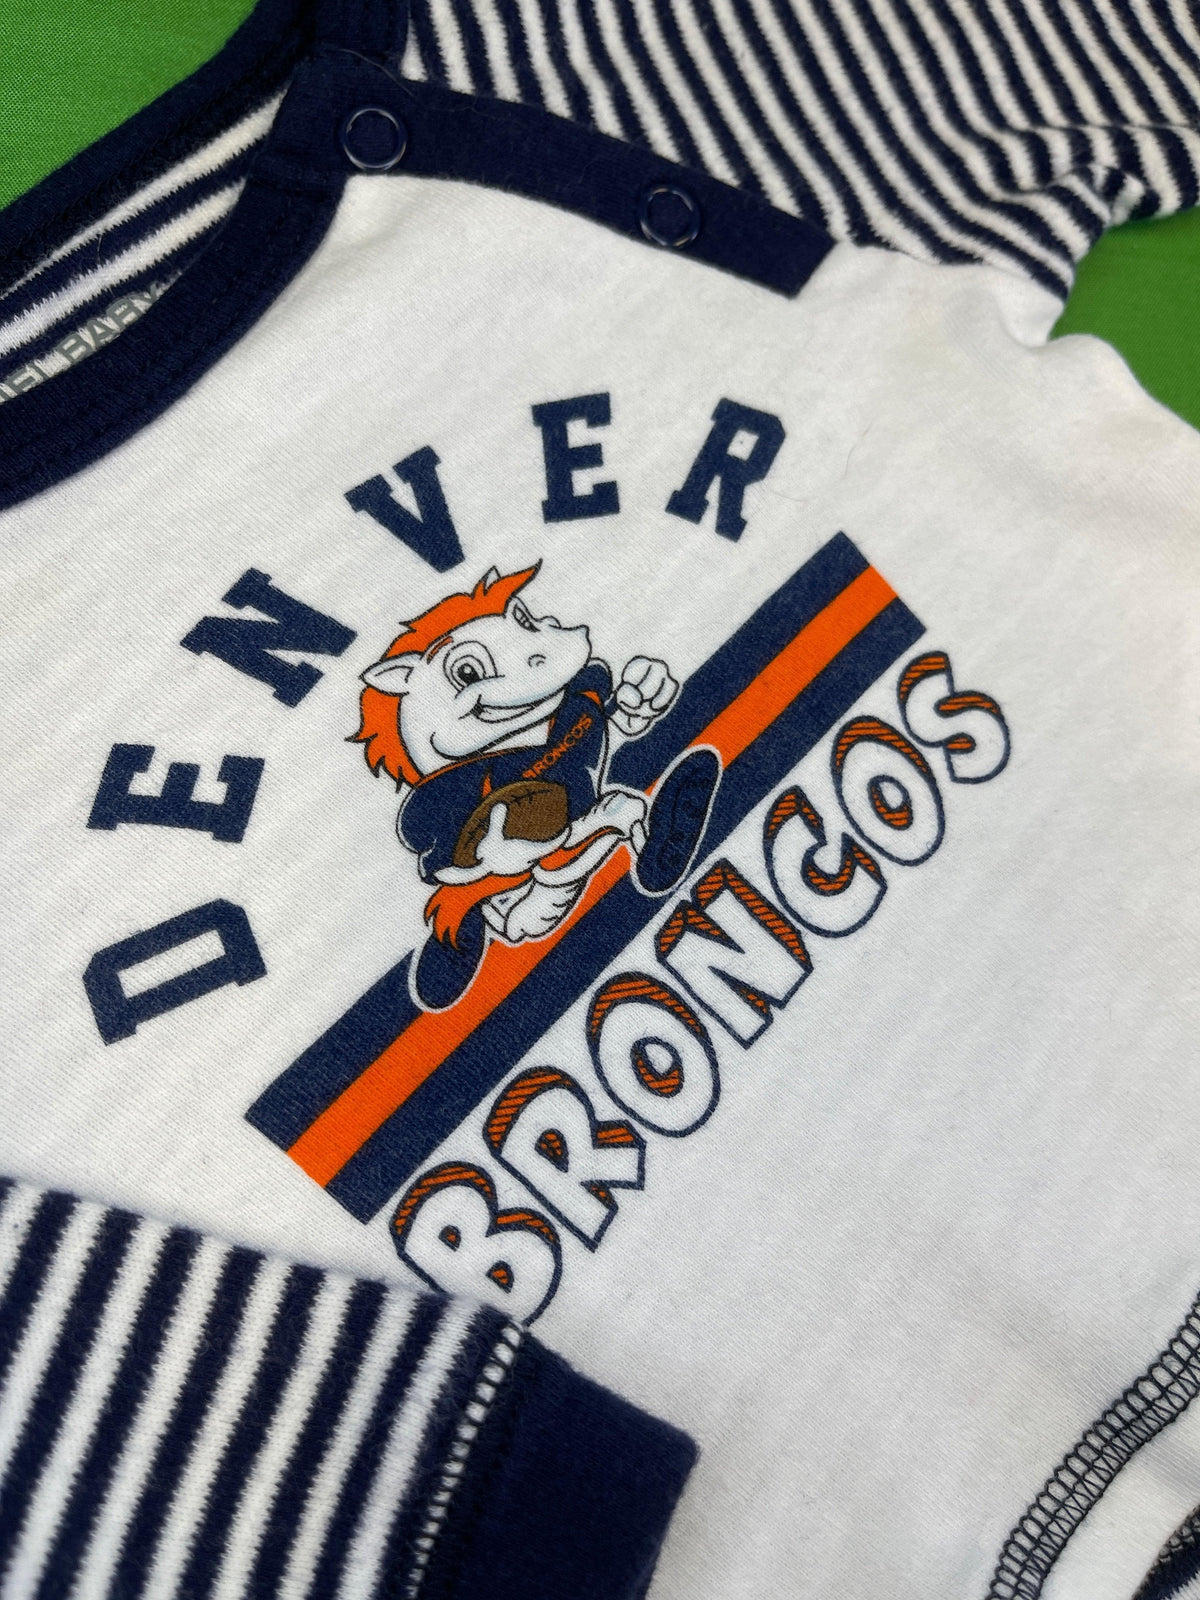 NFL Denver Broncos Striped Long Sleeve T-Shirt 3 months